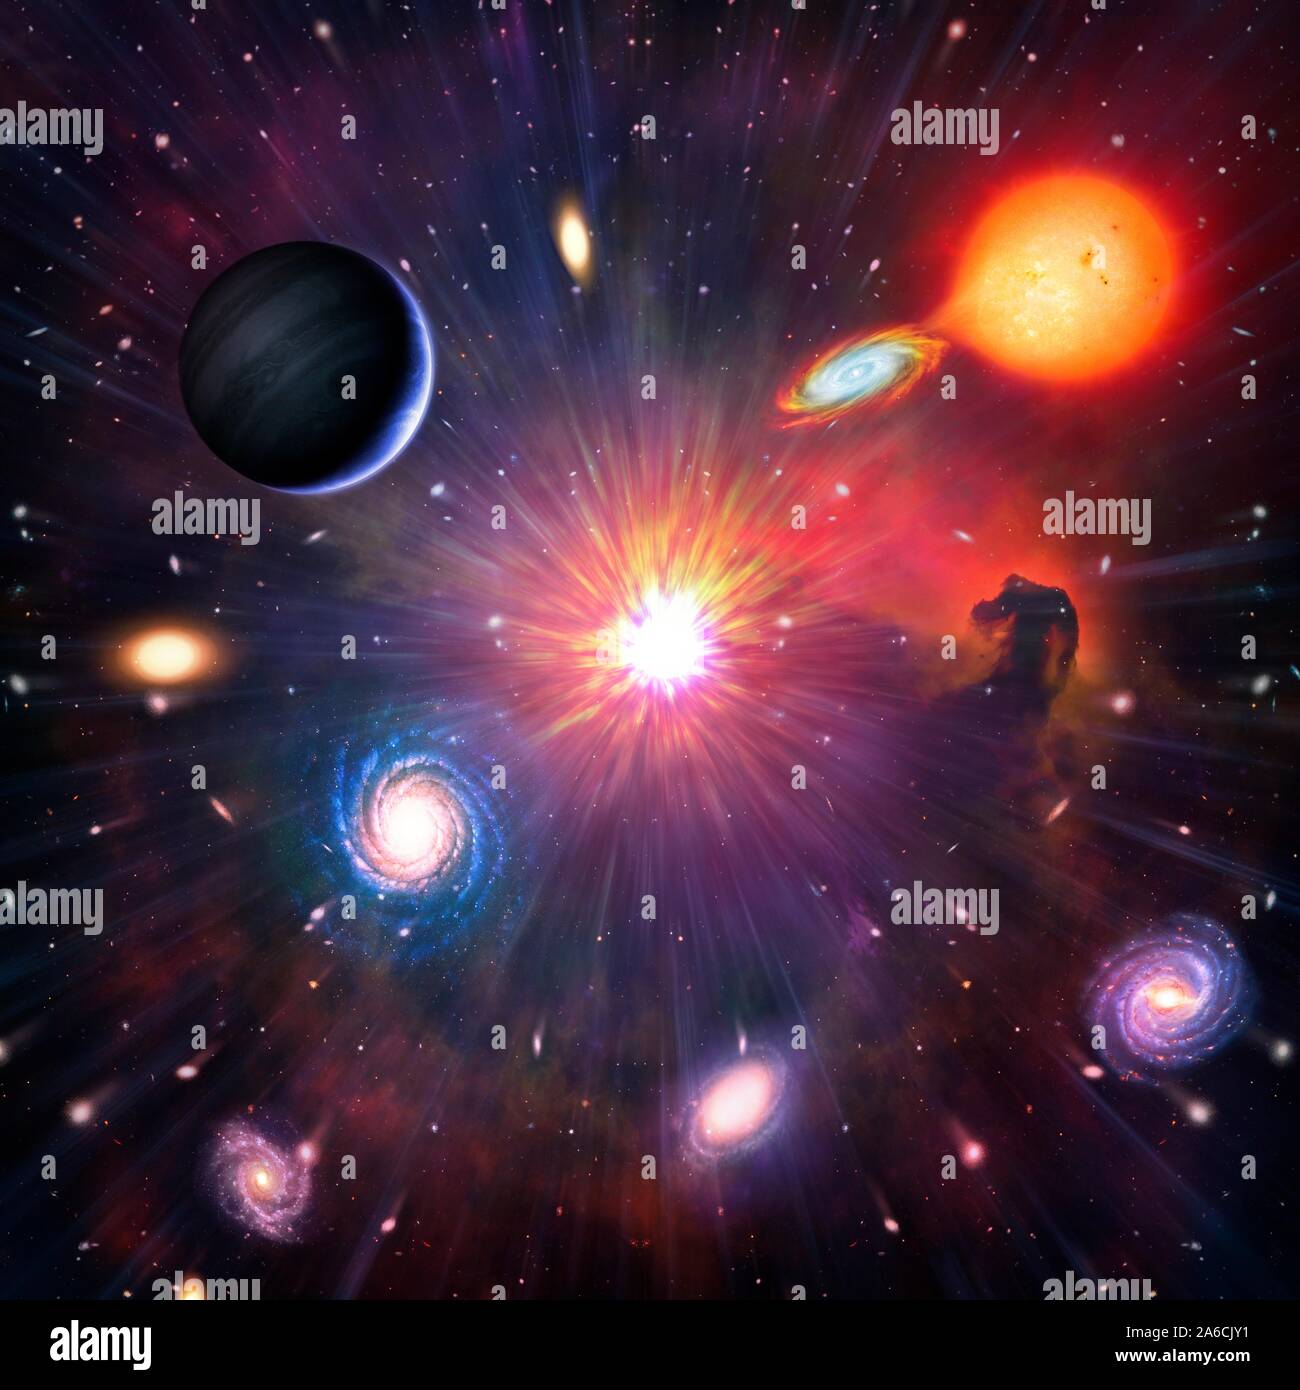 Il s'agit d'une illustration conceptuelle représentant l'espace et l'astronomie sur général. Il montre les différents objets qui peuvent être trouvés dans l'Univers : les planètes, les lunes, les étoiles y compris les étoiles, nébuleuses et galaxies. Banque D'Images